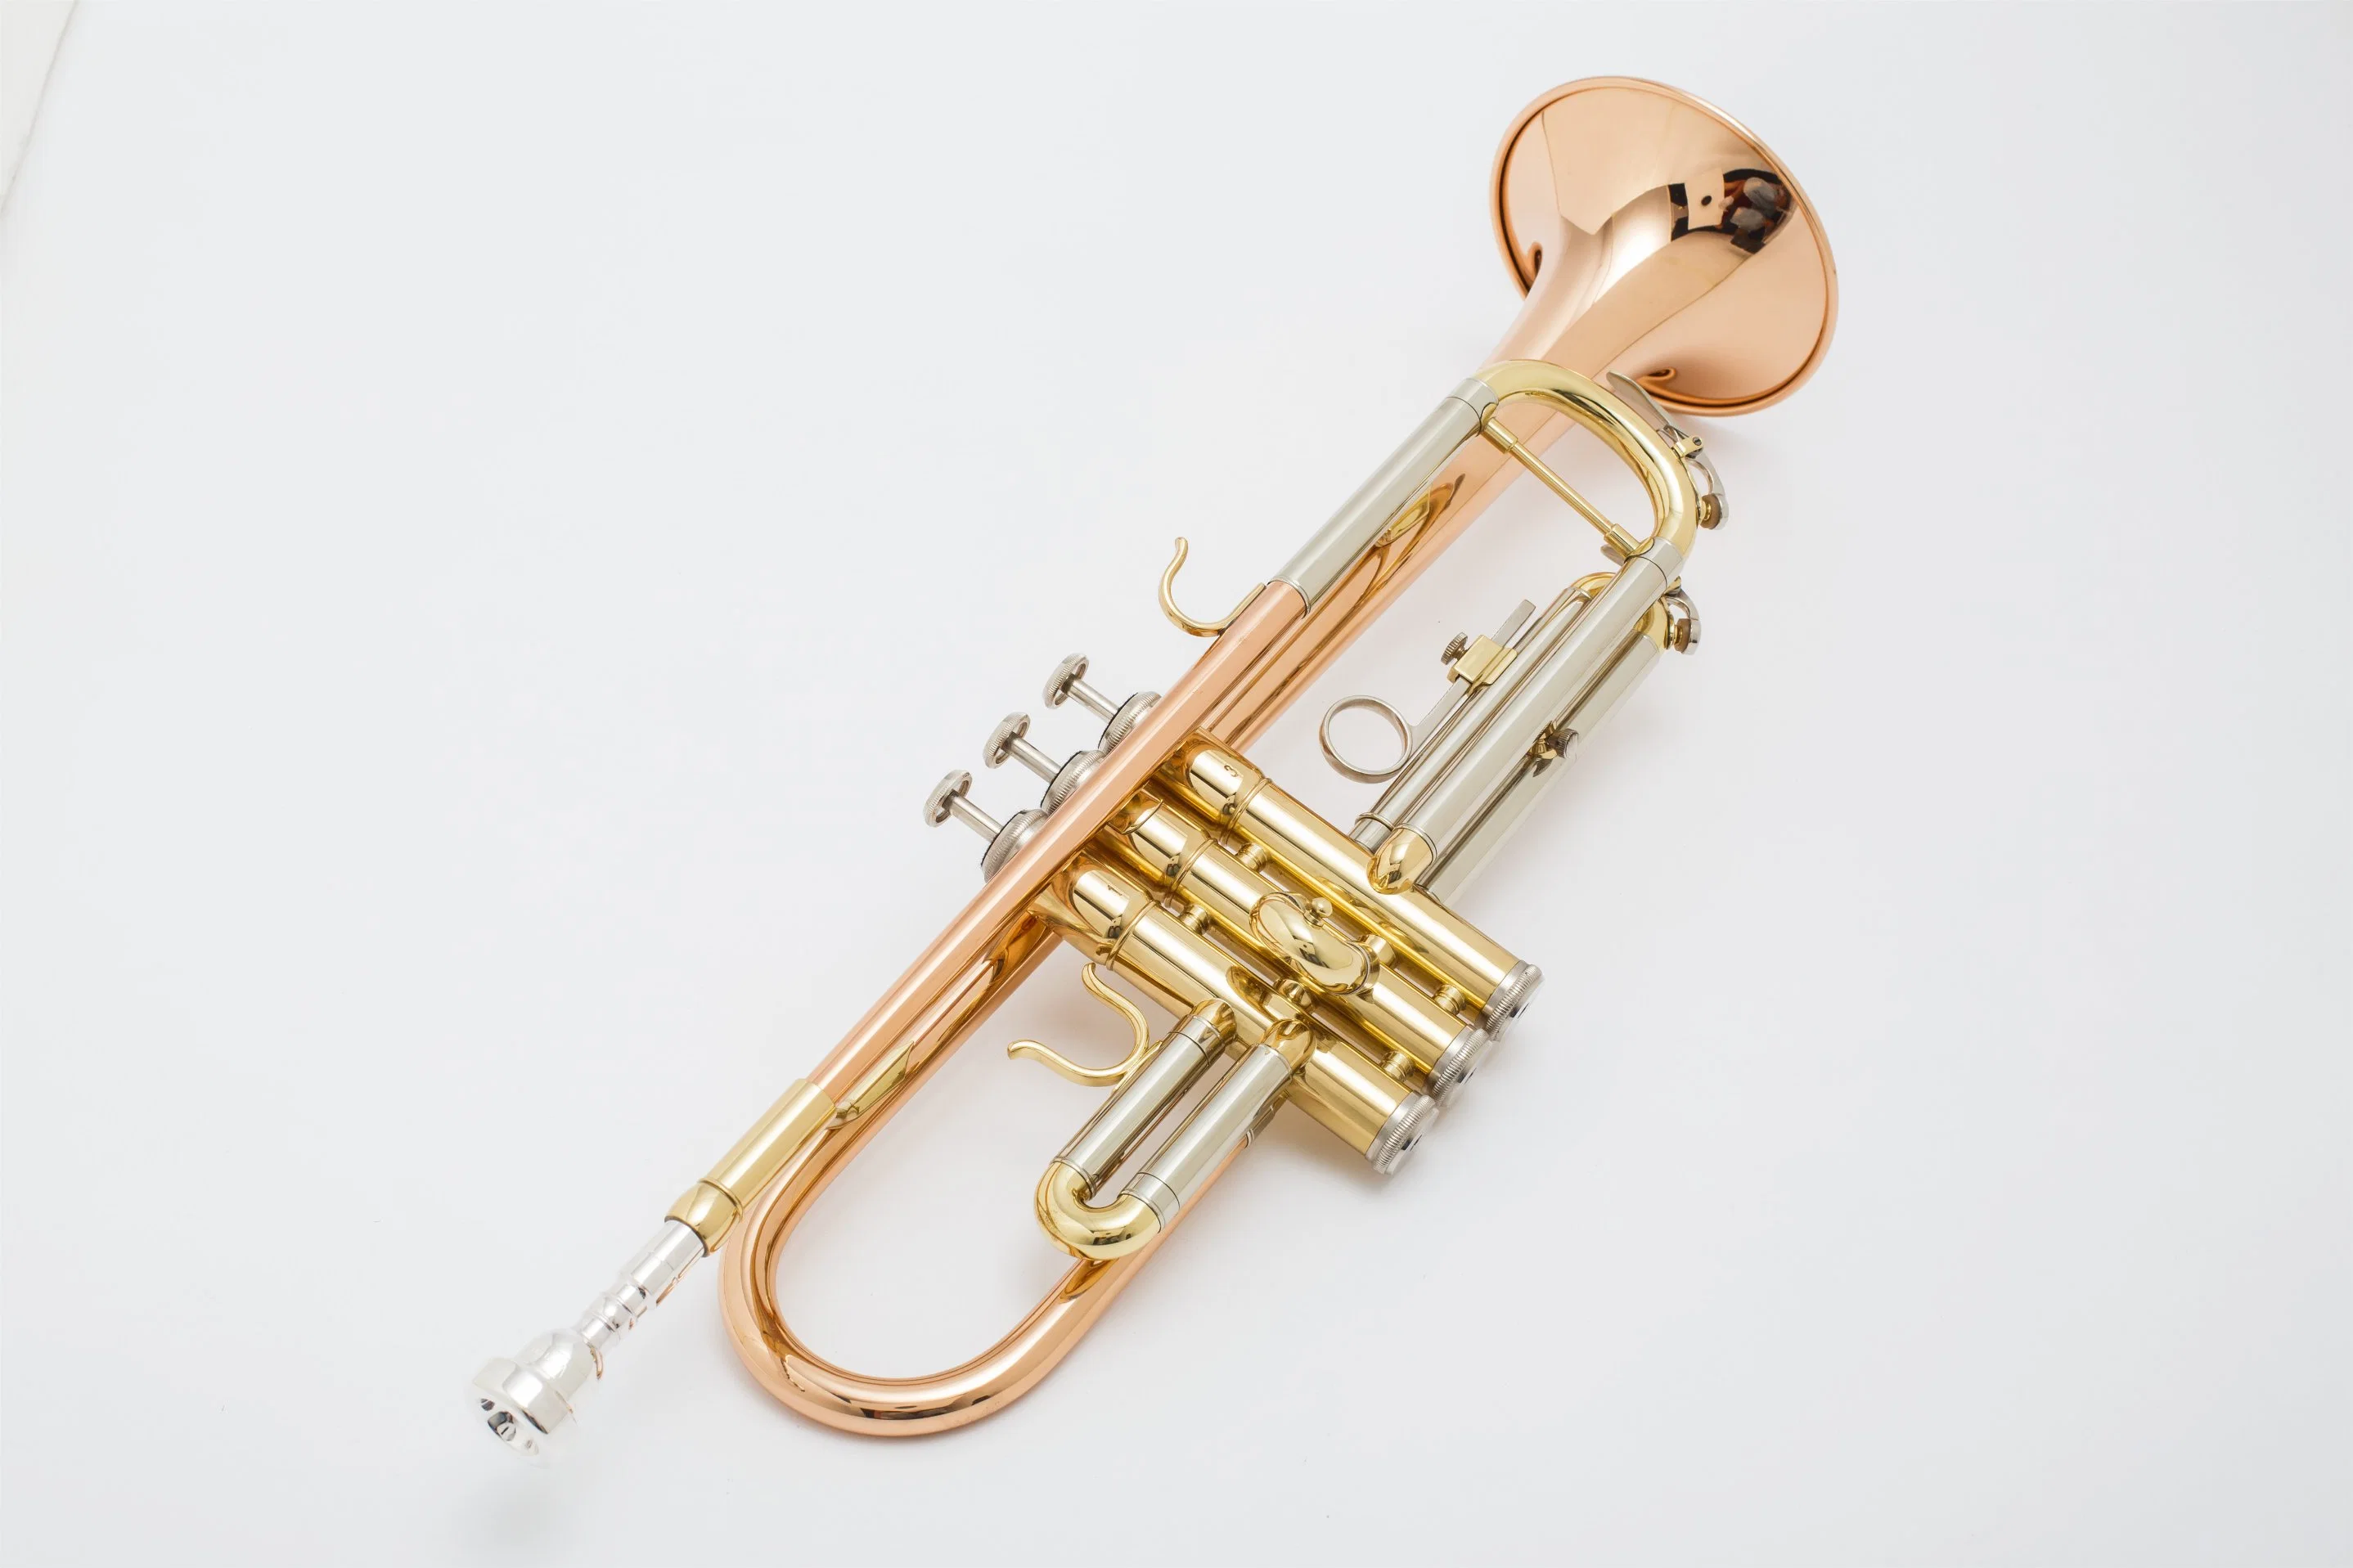 Cuerpo de cobre rojo de buena calidad, la trompeta, fabricado en China,